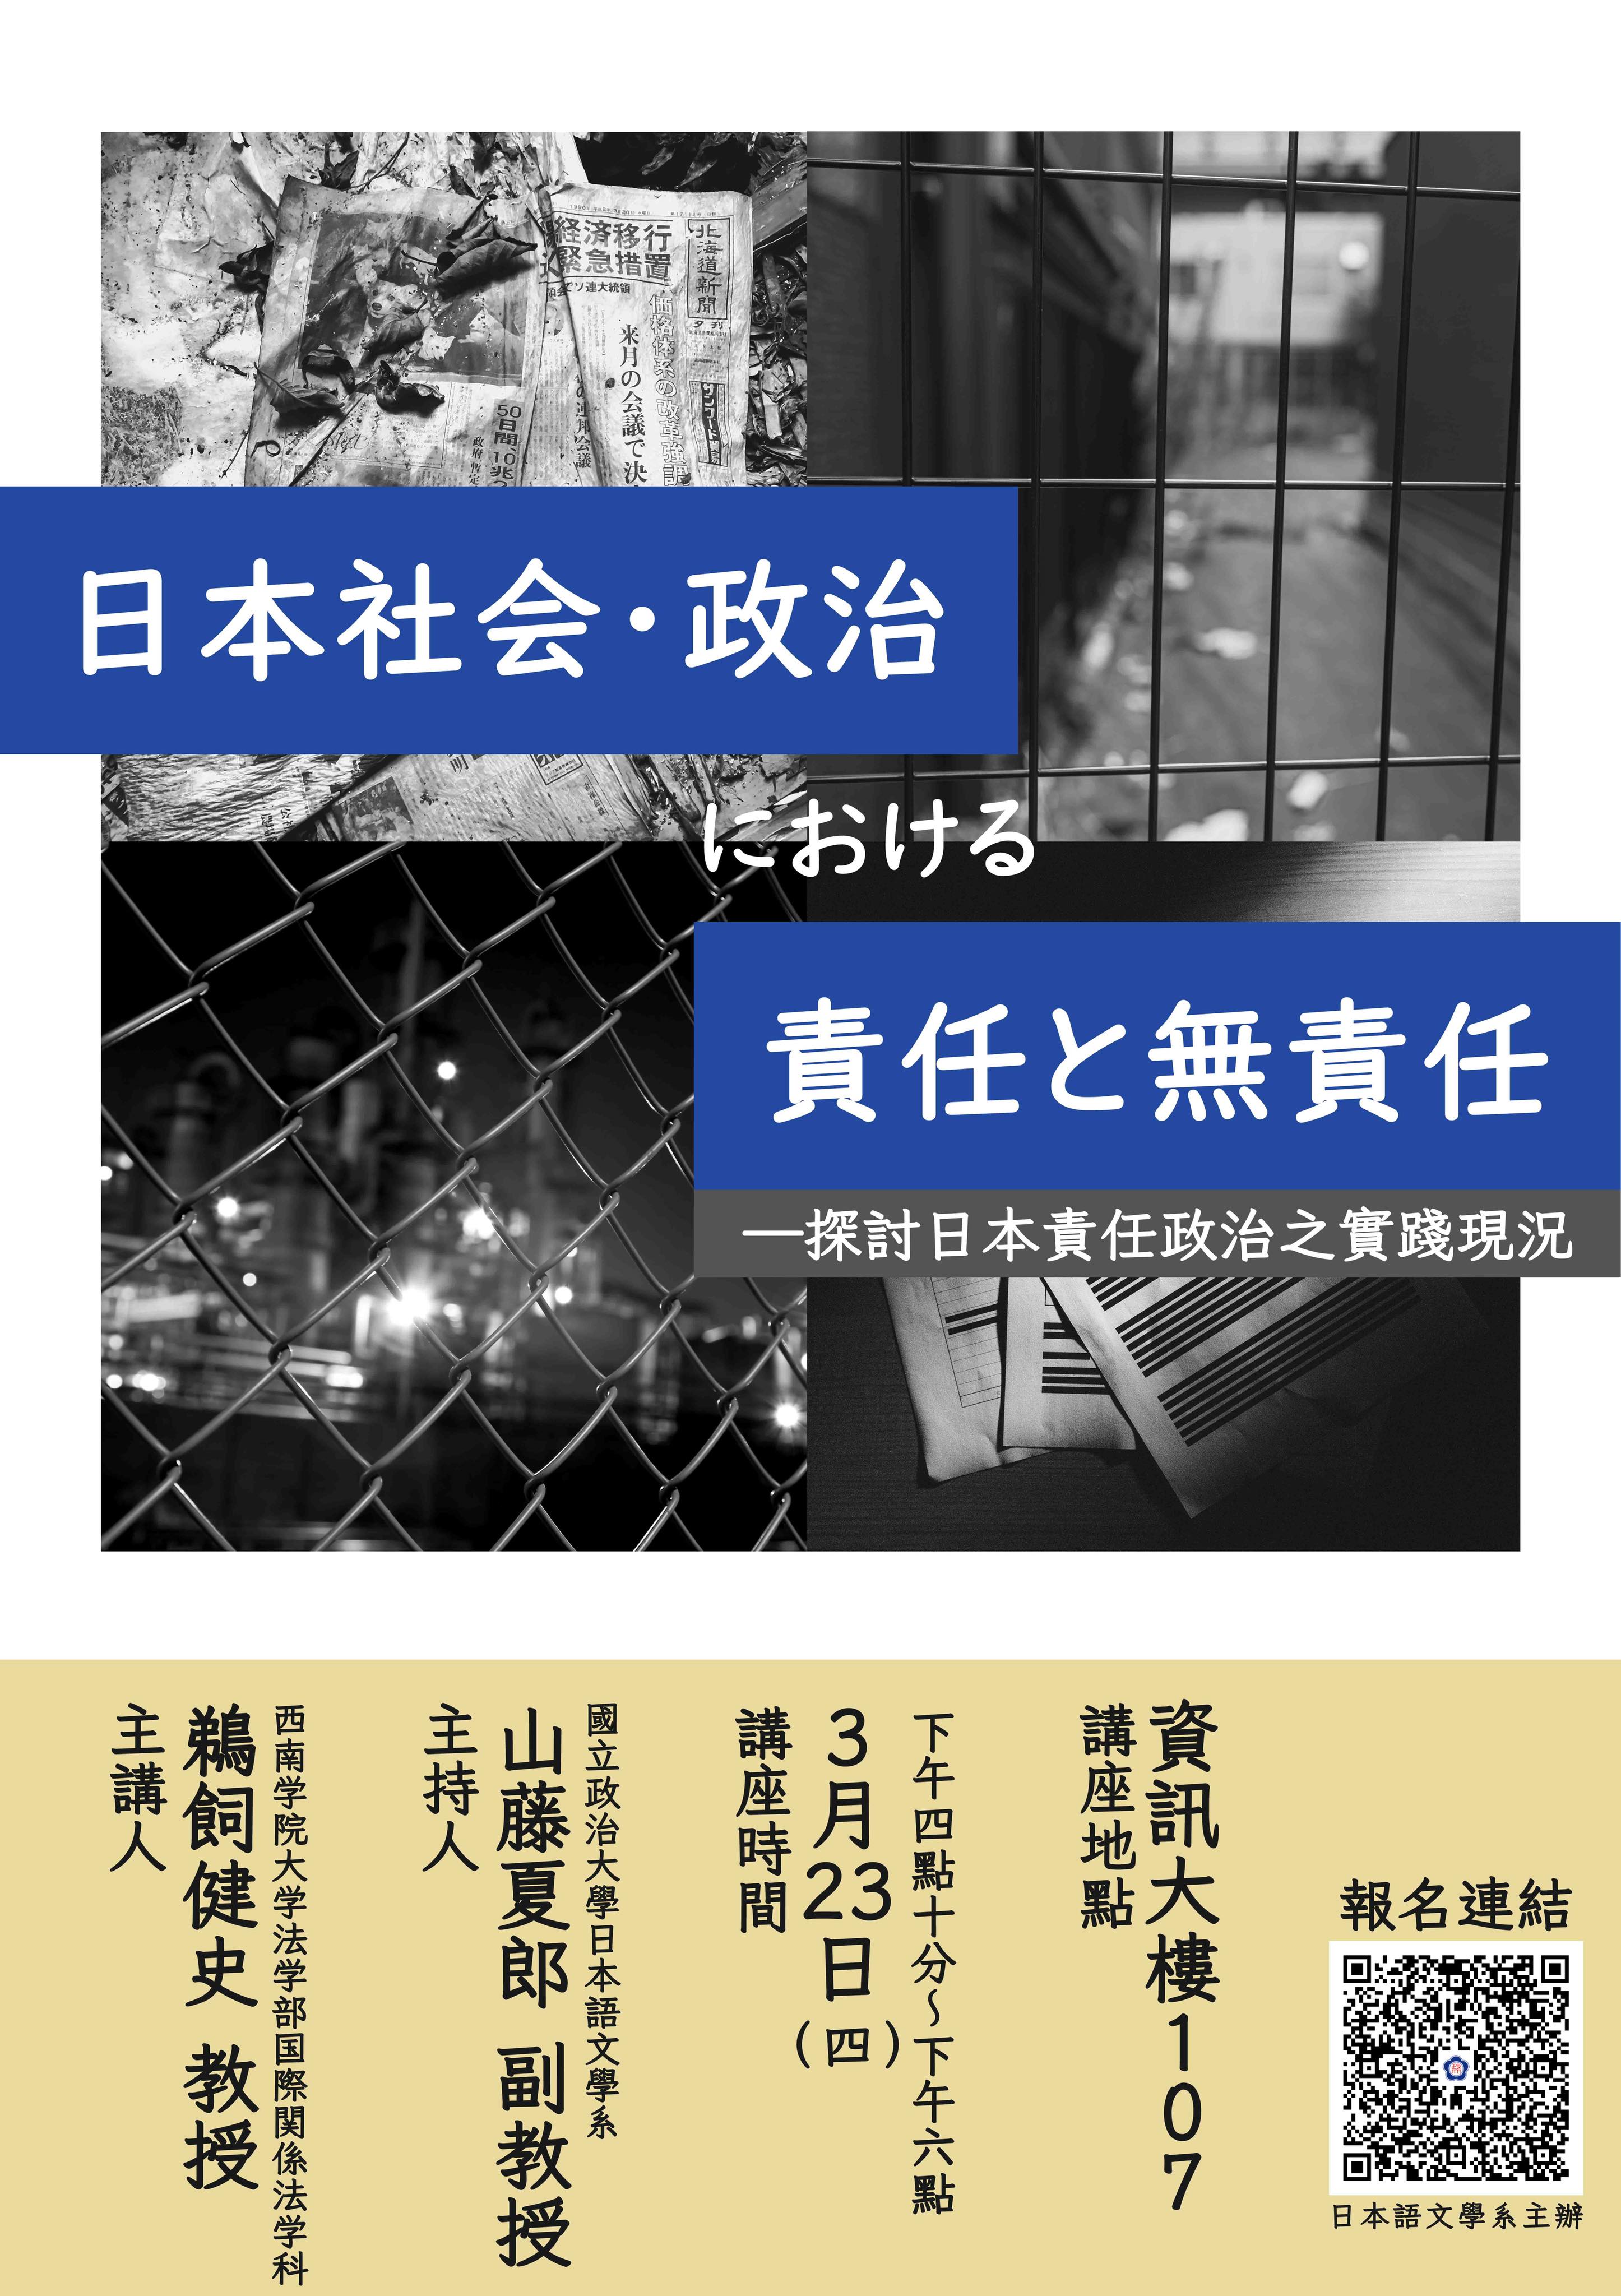 【演講】111-2日文系講座「日本社会・政治における責任と無責任」